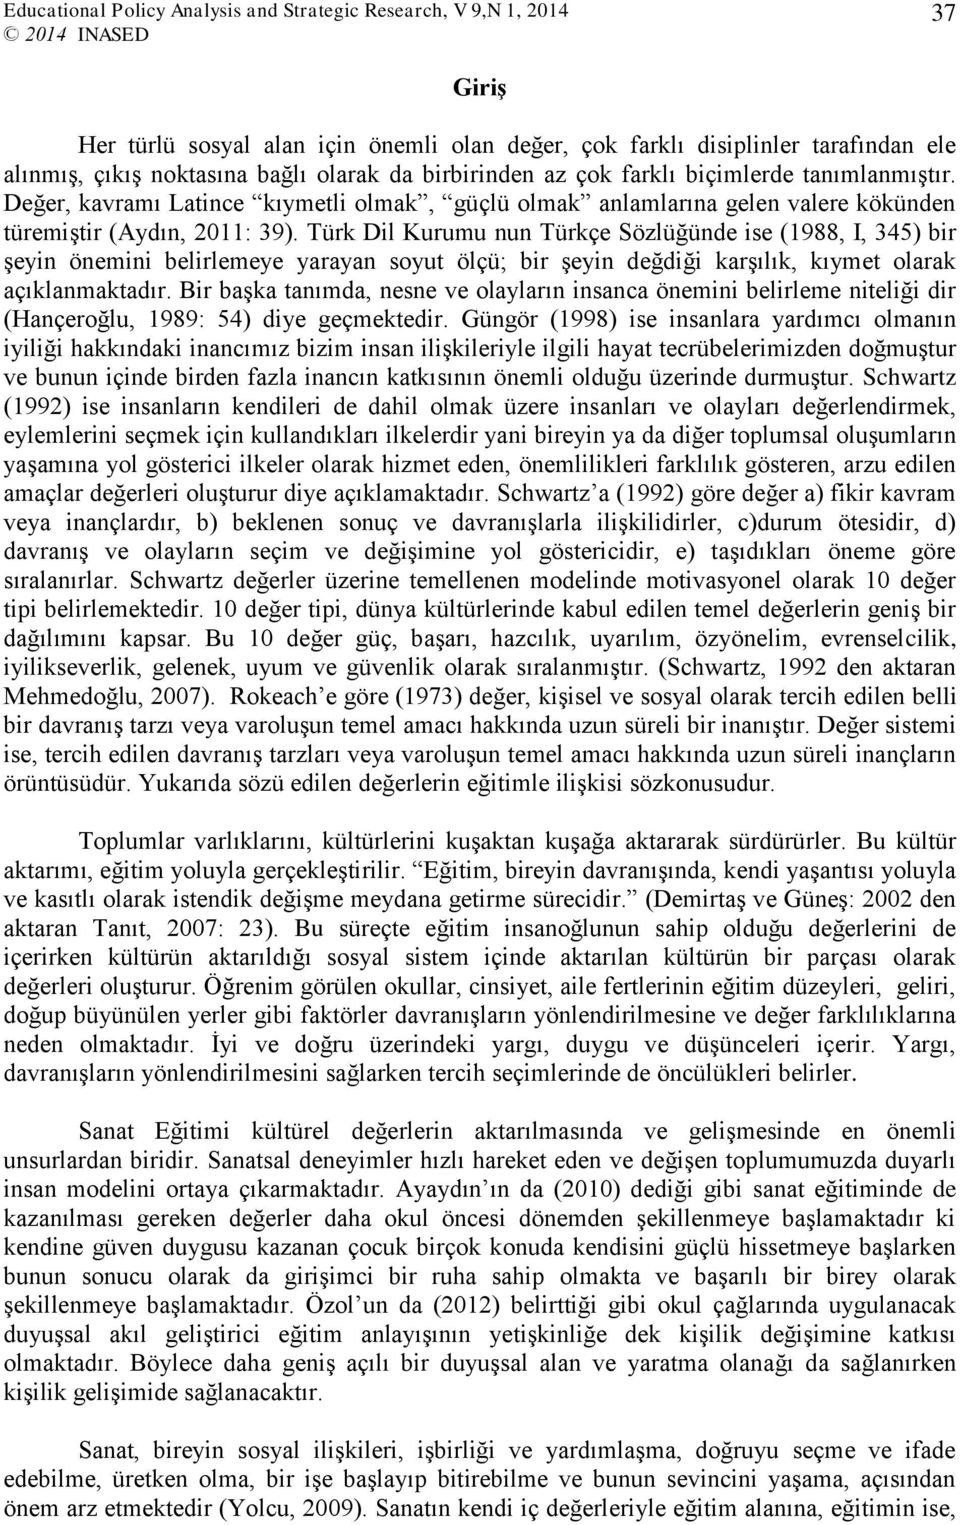 Türk Dil Kurumu nun Türkçe Sözlüğünde ise (1988, I, 345) bir şeyin önemini belirlemeye yarayan soyut ölçü; bir şeyin değdiği karşılık, kıymet olarak açıklanmaktadır.